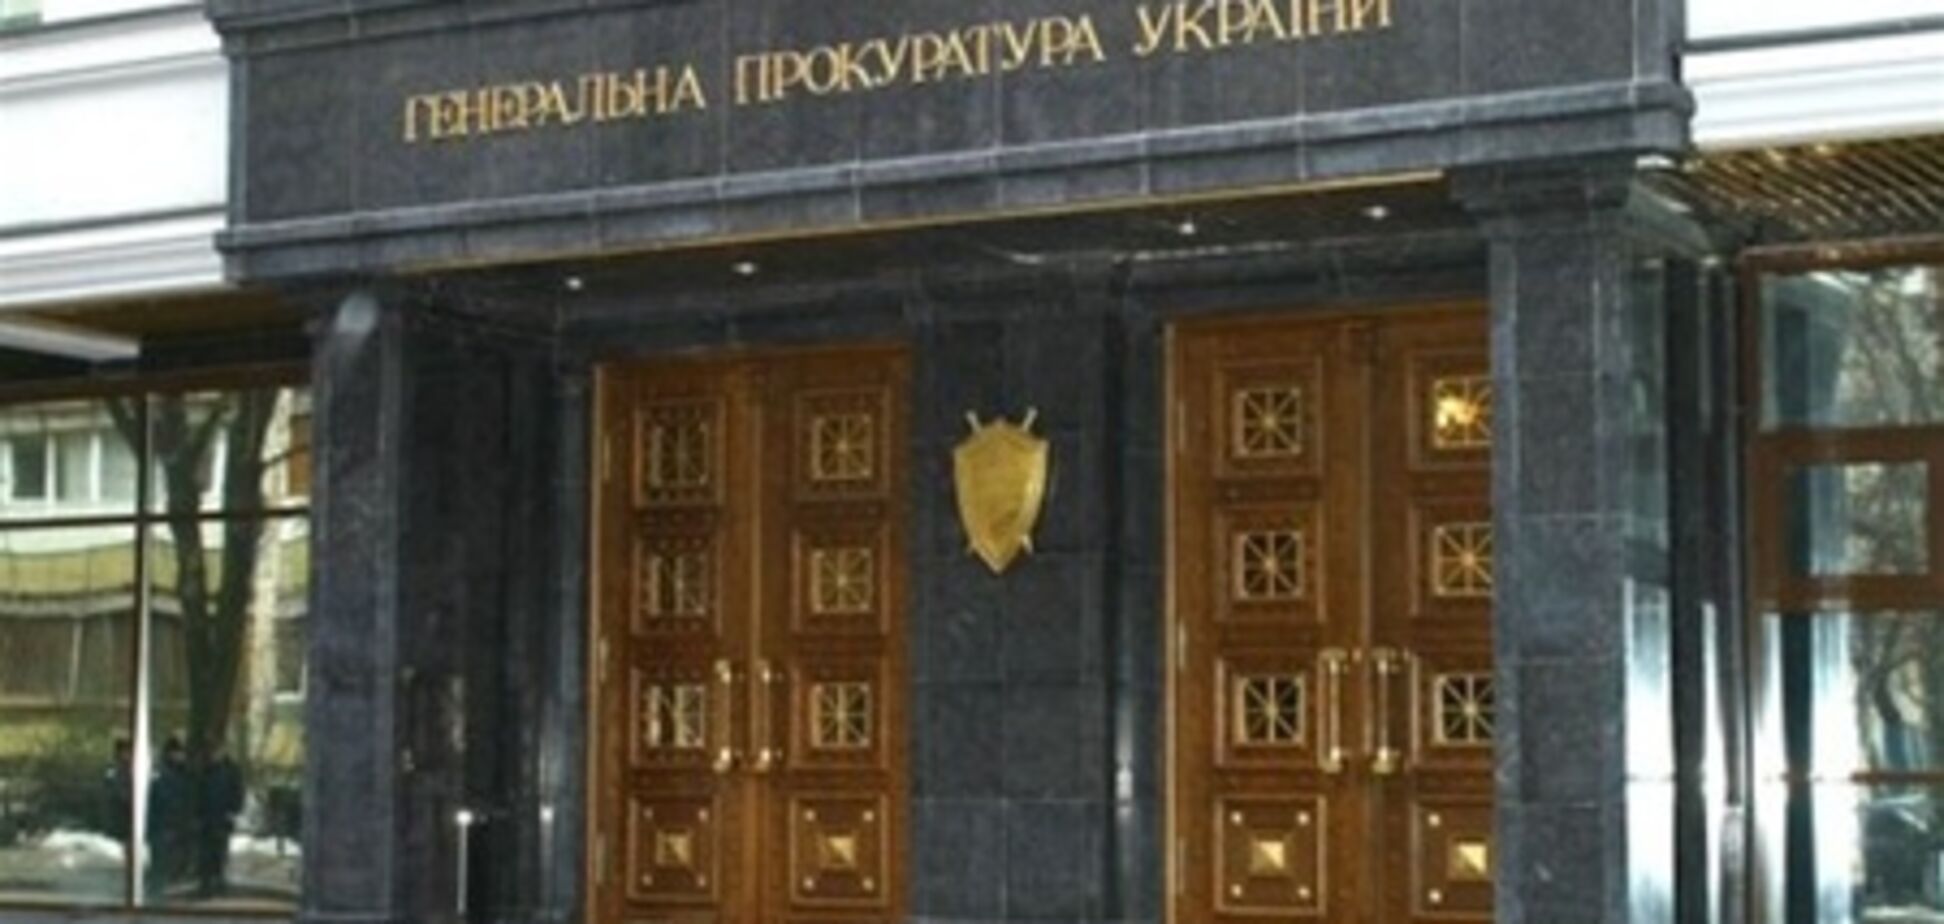 Оппозиция протестует против публикации фамилий свидетелей Тимошенко